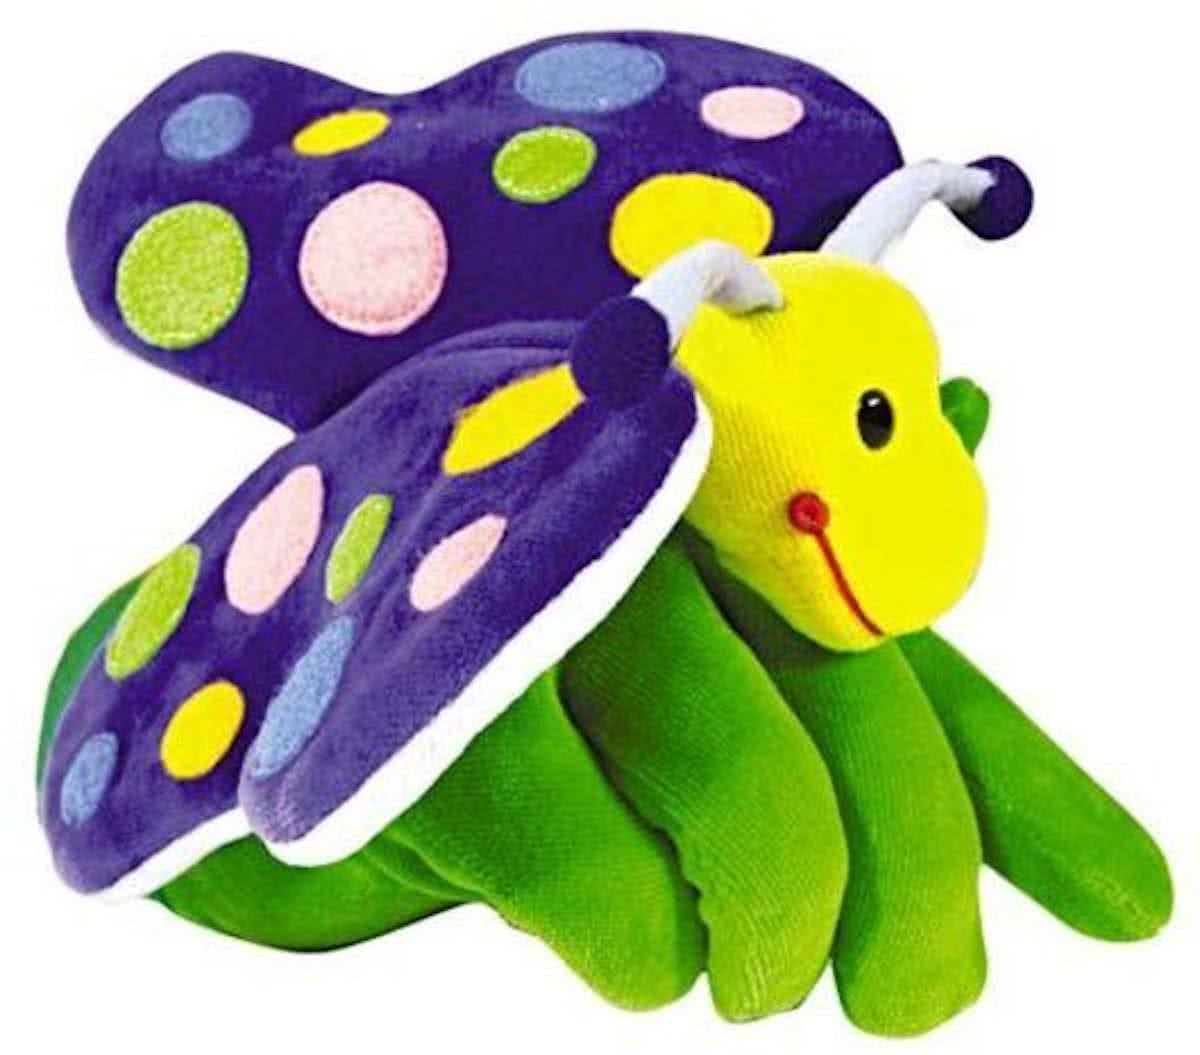 Beleduc Vlinder Speelhandschoen - Handpop